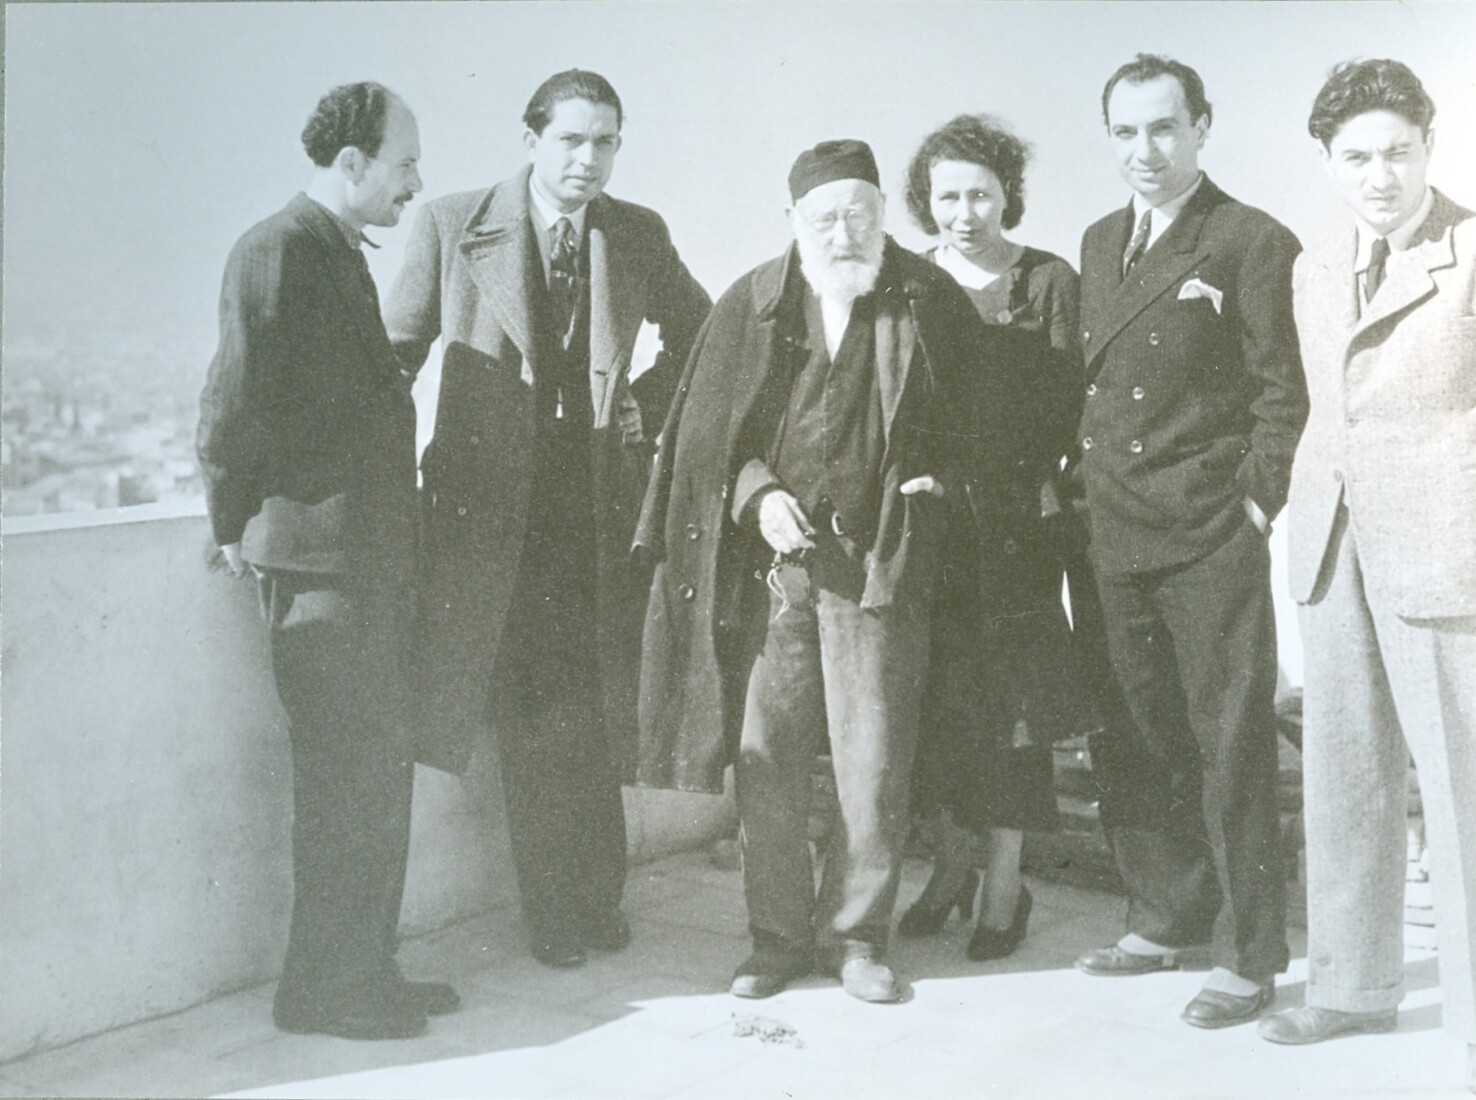 Ο Γιαννούλης Χαλεπάς με την ανιψιά του Ειρήνη, τους ζωγράφους Ηλία Φέρτη, Αλέκο Κοντόπουλο και Μίκη Ματσάκη και τον γλύπτη Ευθύμιο Γκικάδη, μέλη της Ενώσεως Ελεύθεροι Καλλιτέχναι, 1934